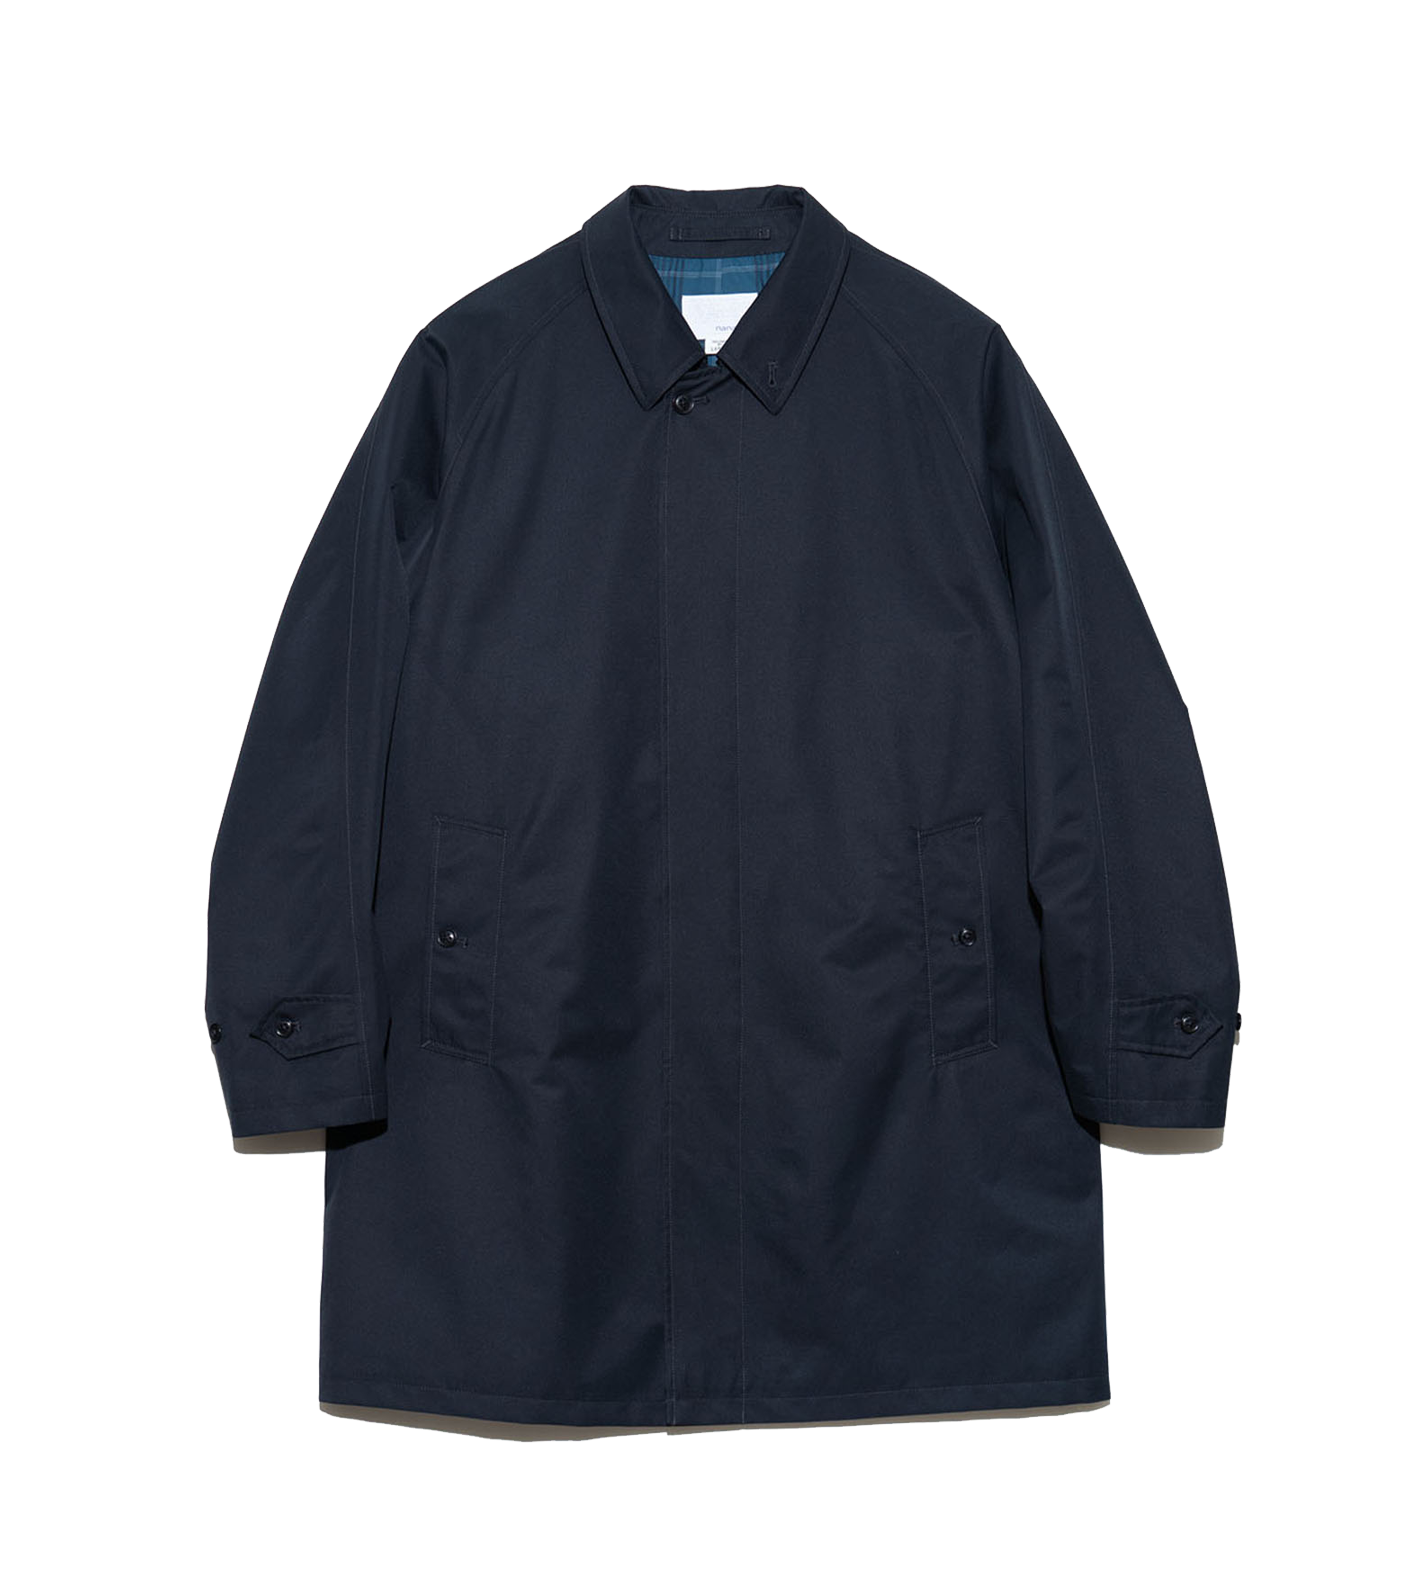 nanamica - Jacket - 2L GORE-TEX - Soutien Collar Coat - Navy